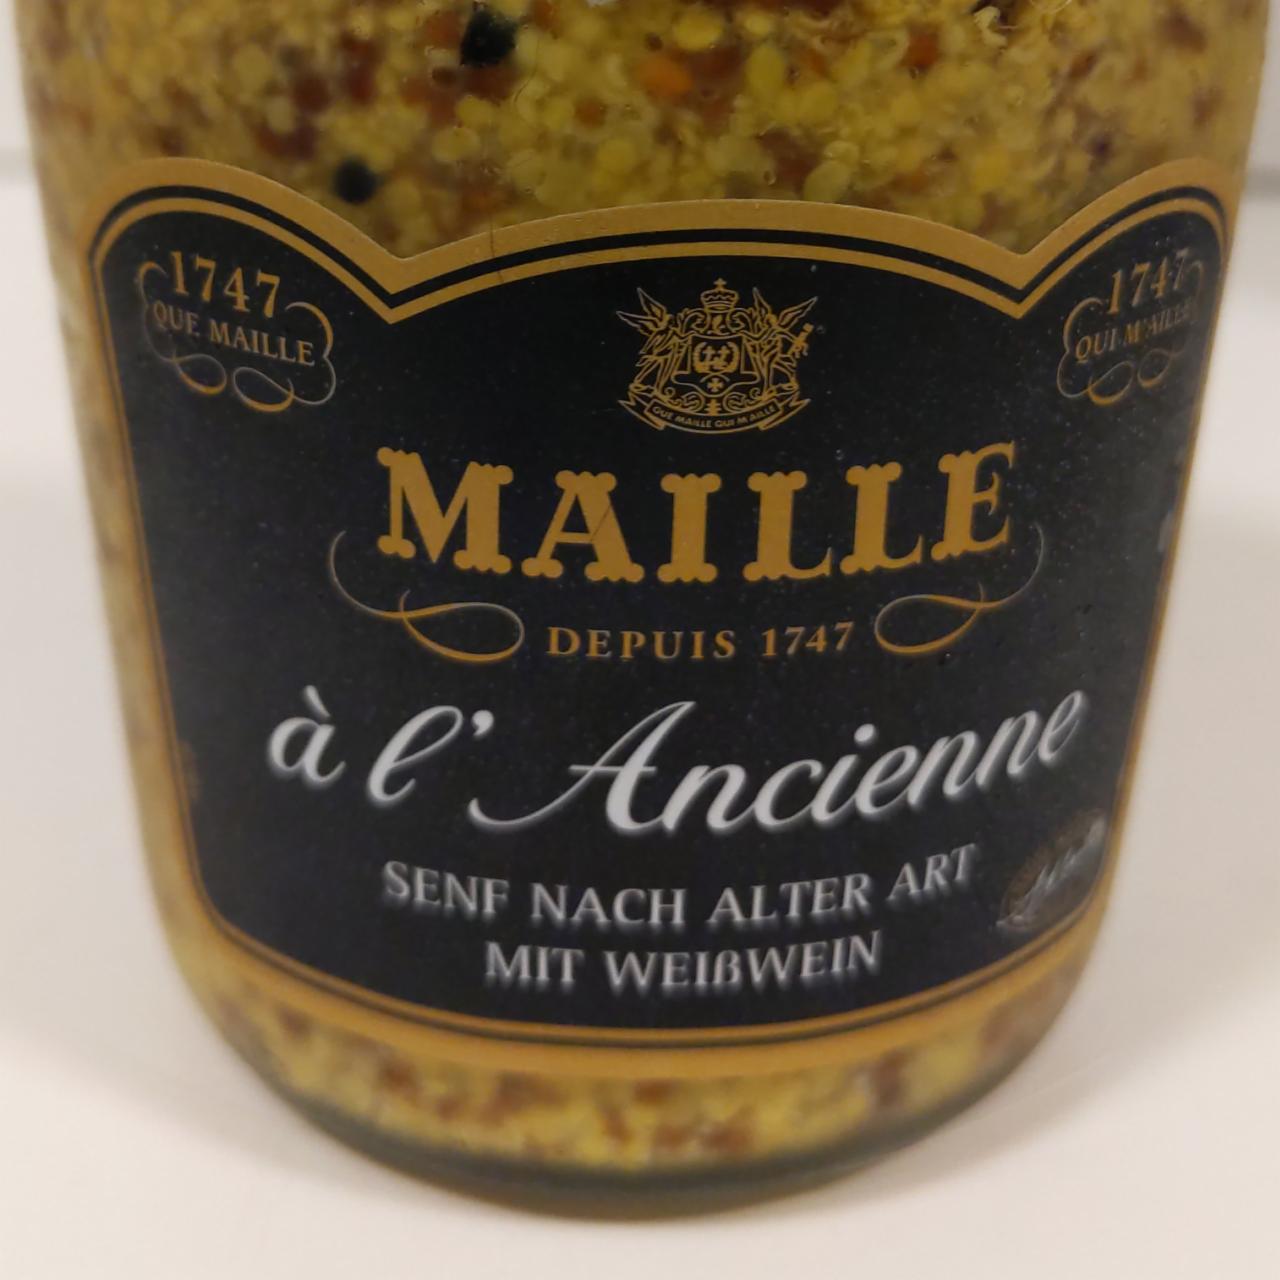 Képek - Egészmagos mustár fehérborral Maille